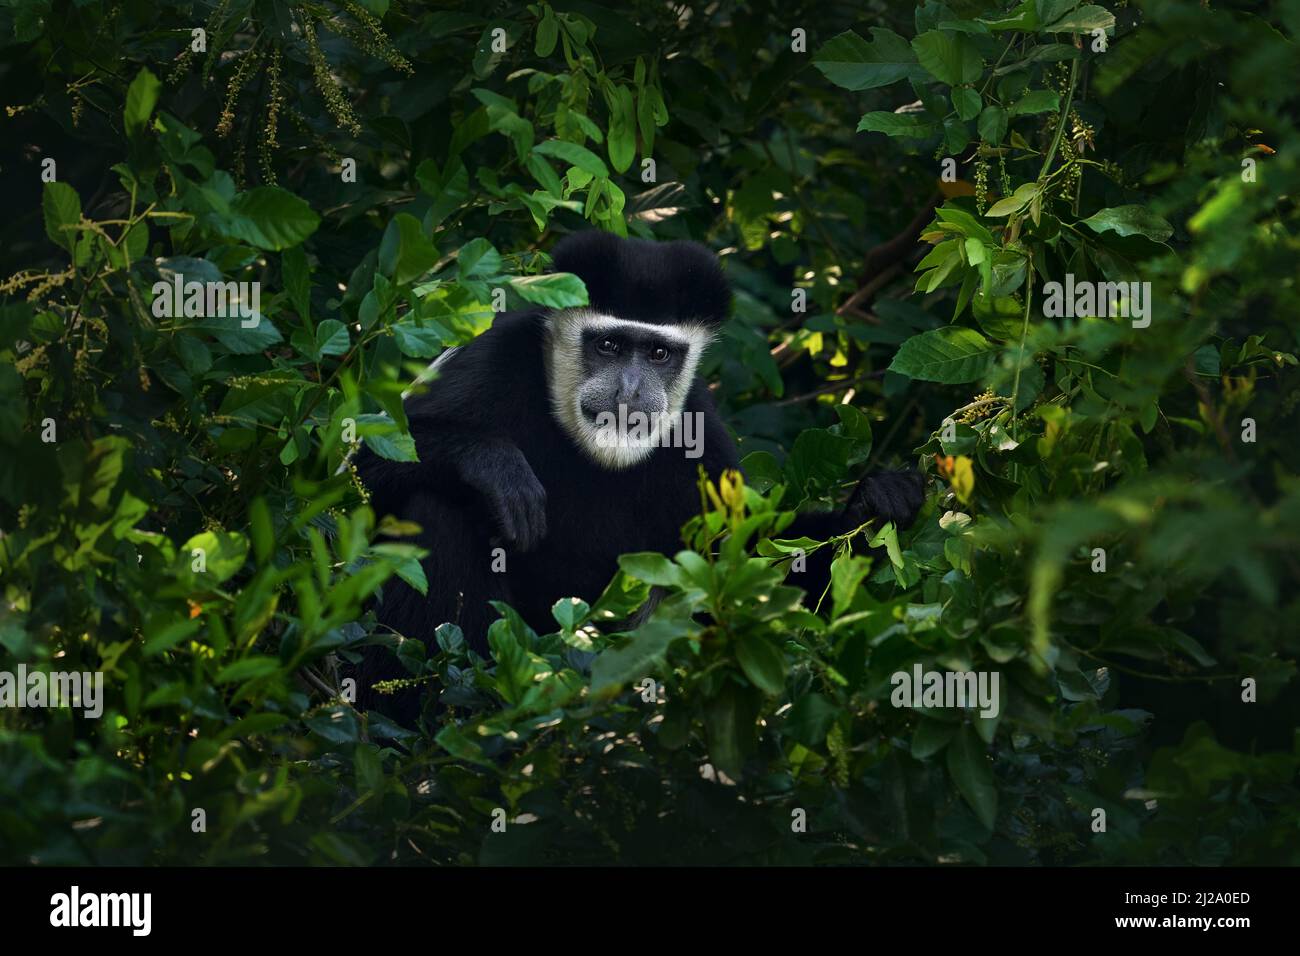 Schwarz-weißer Kolobusaffen aus dem Murchison Falls NP. Affentier aus Ostafrika. Lebensraum für dunkle Waldbäume von Tieren. Wildtiere Natur aus Uganda. Stockfoto